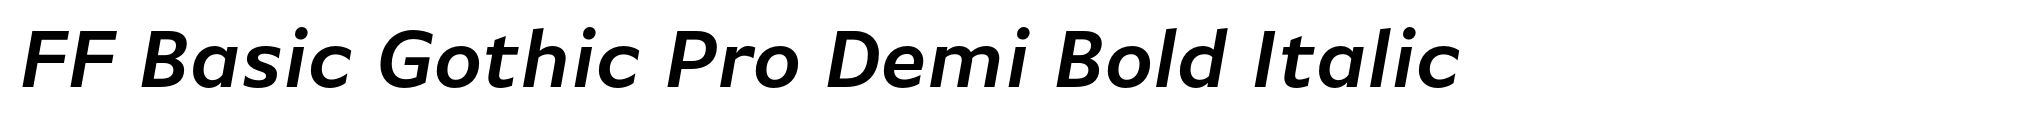 FF Basic Gothic Pro Demi Bold Italic image